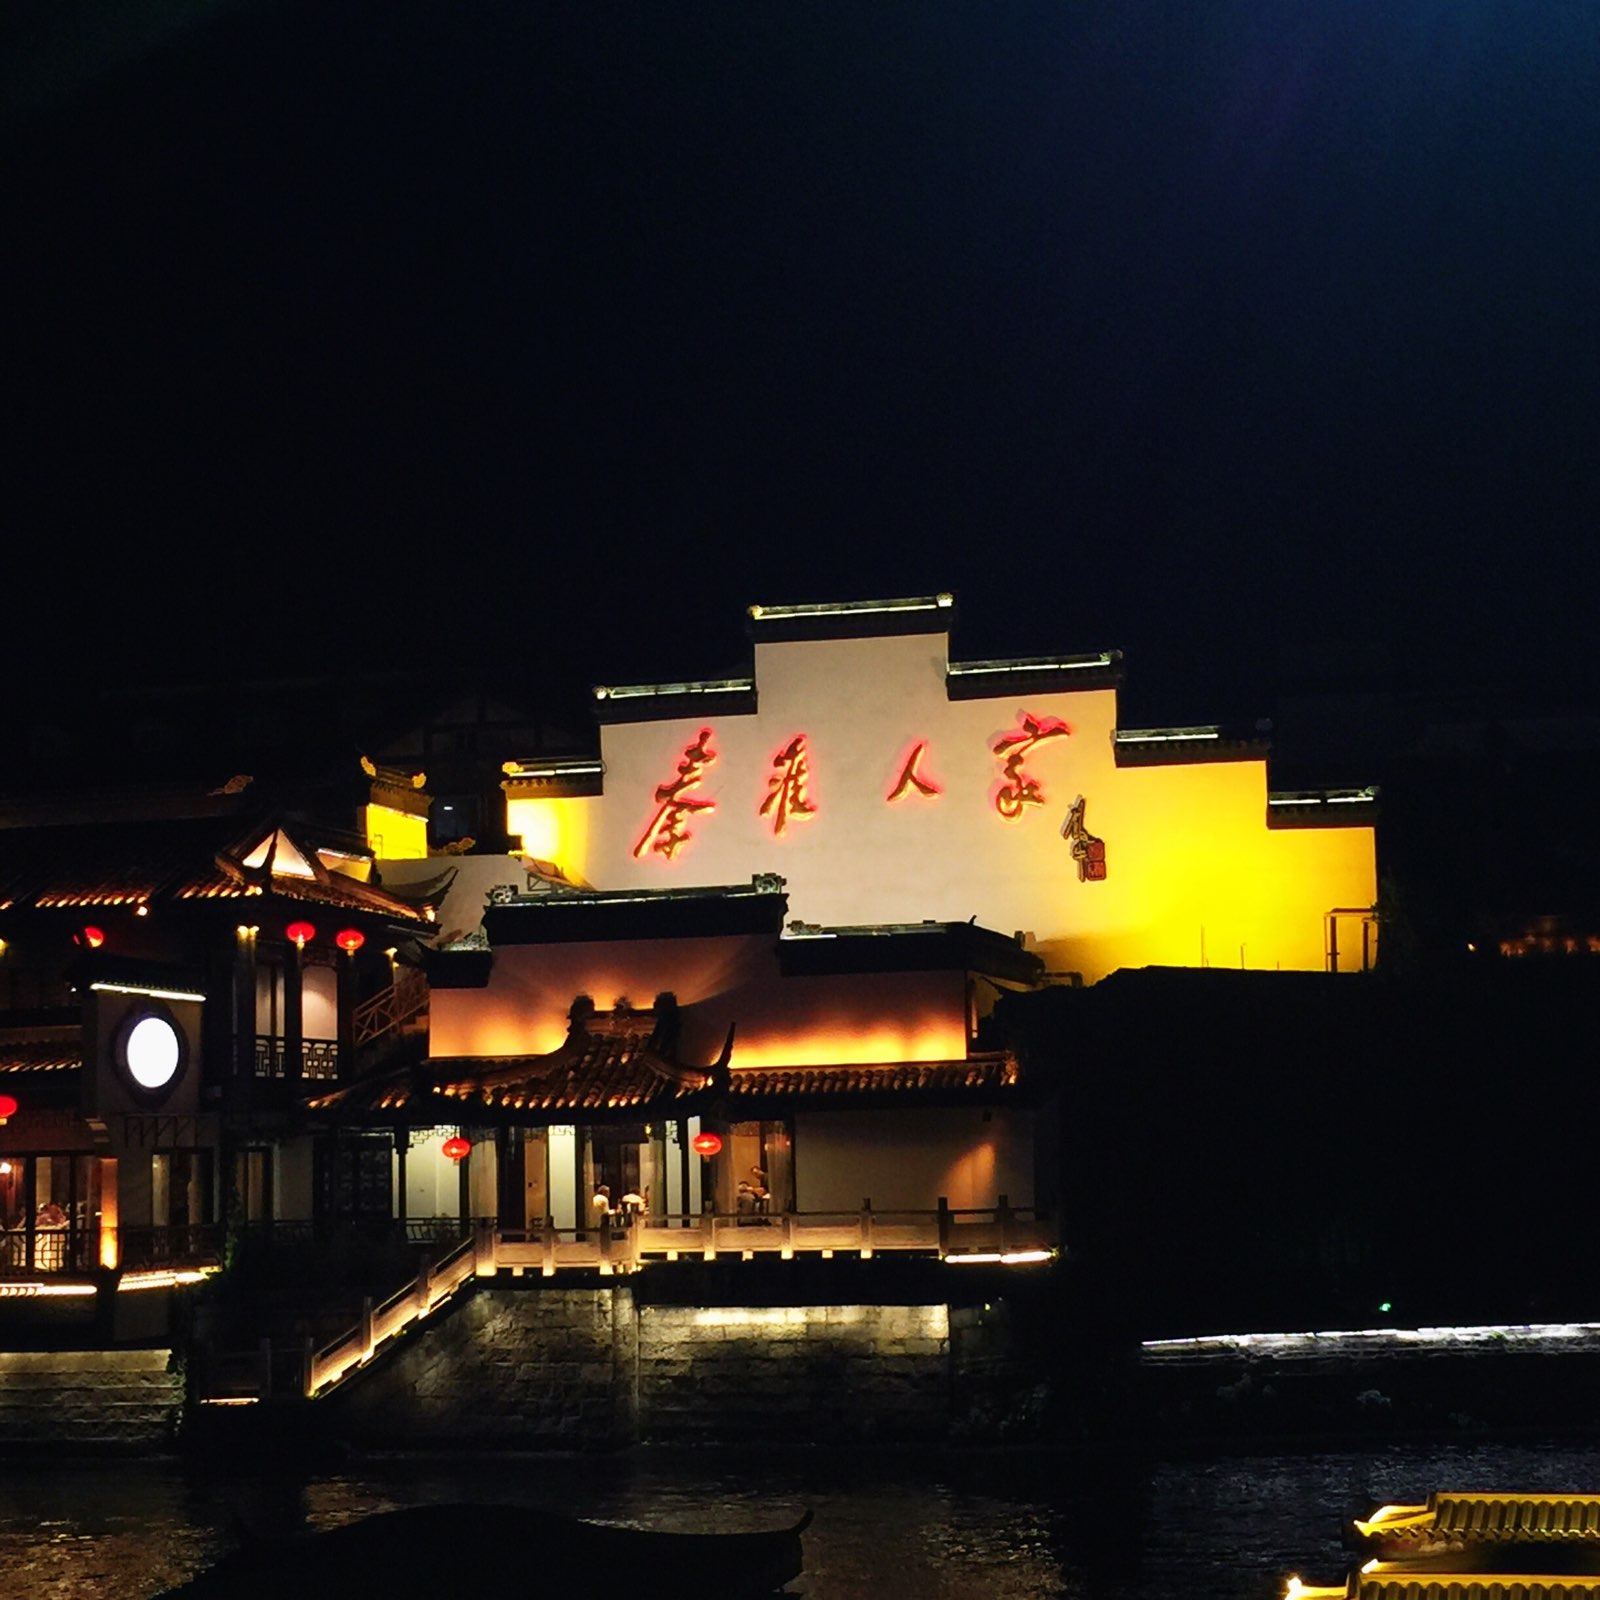 晚上坐了夜景游船，船上有讲解，沿着秦淮河听了不少历史呀！夜景还是很美的